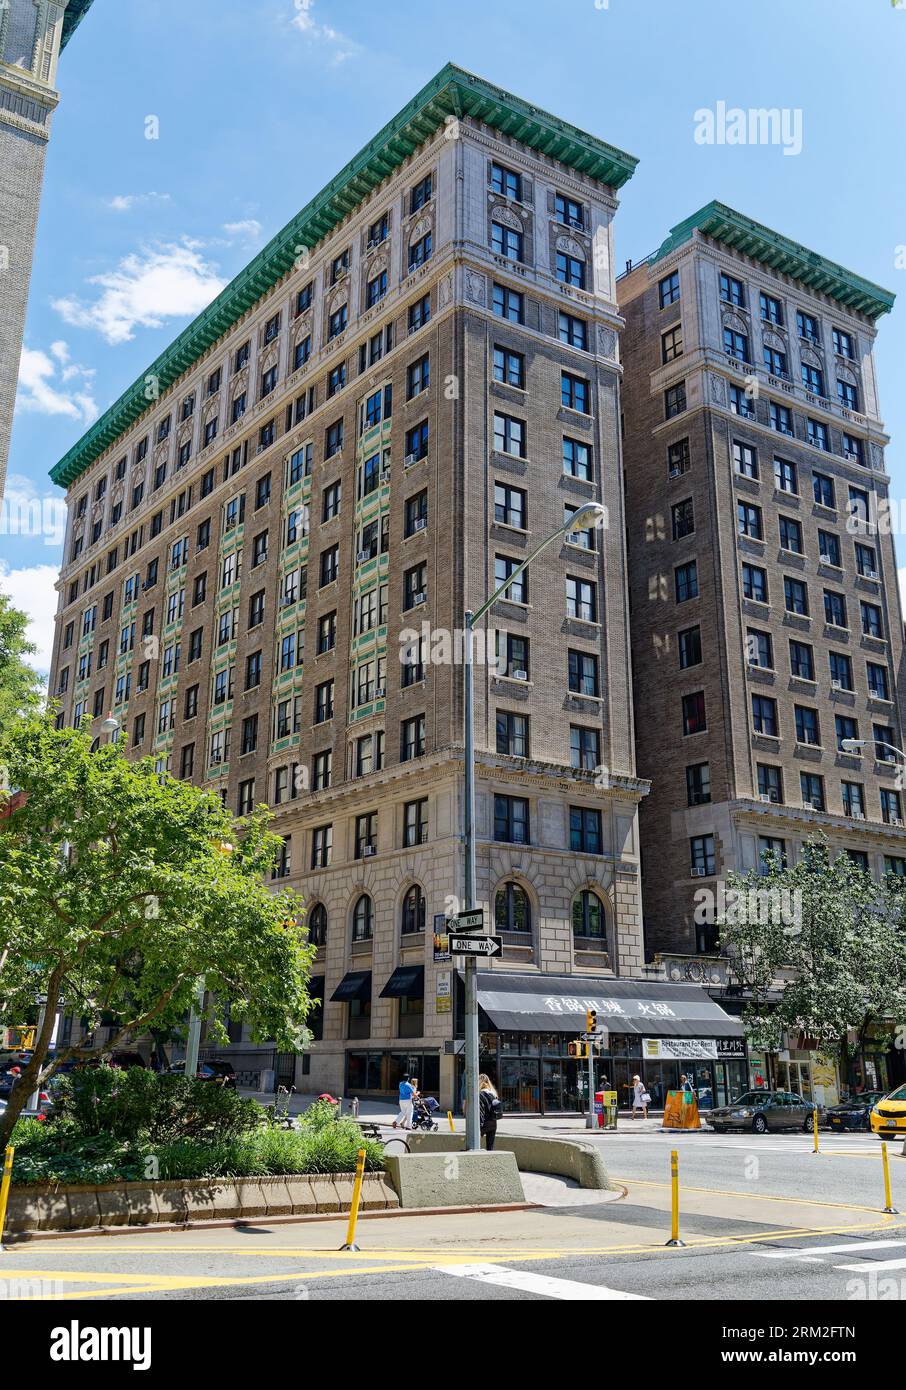 Manhattan Valley: Borchardts Fassade an der 220 West 98th Street behält die klassische dreiteilige Form von Basis, Schacht und Hauptstadt. Stockfoto